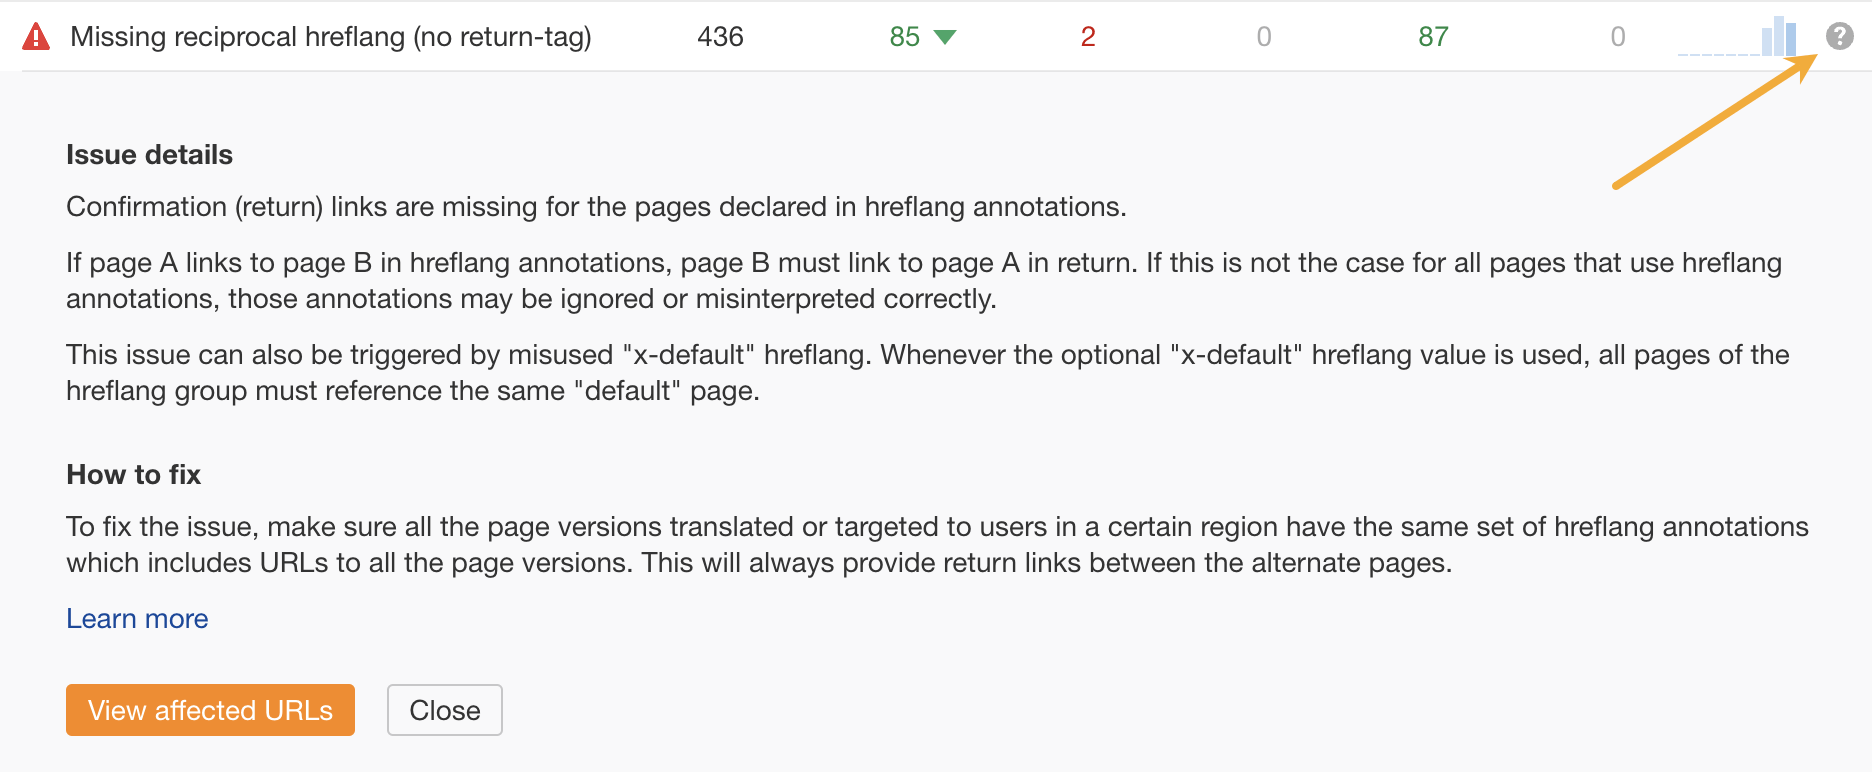 مثال على نصيحة حول كيفية إصلاح مشكلات hreflang في تدقيق موقع Ahrefs.